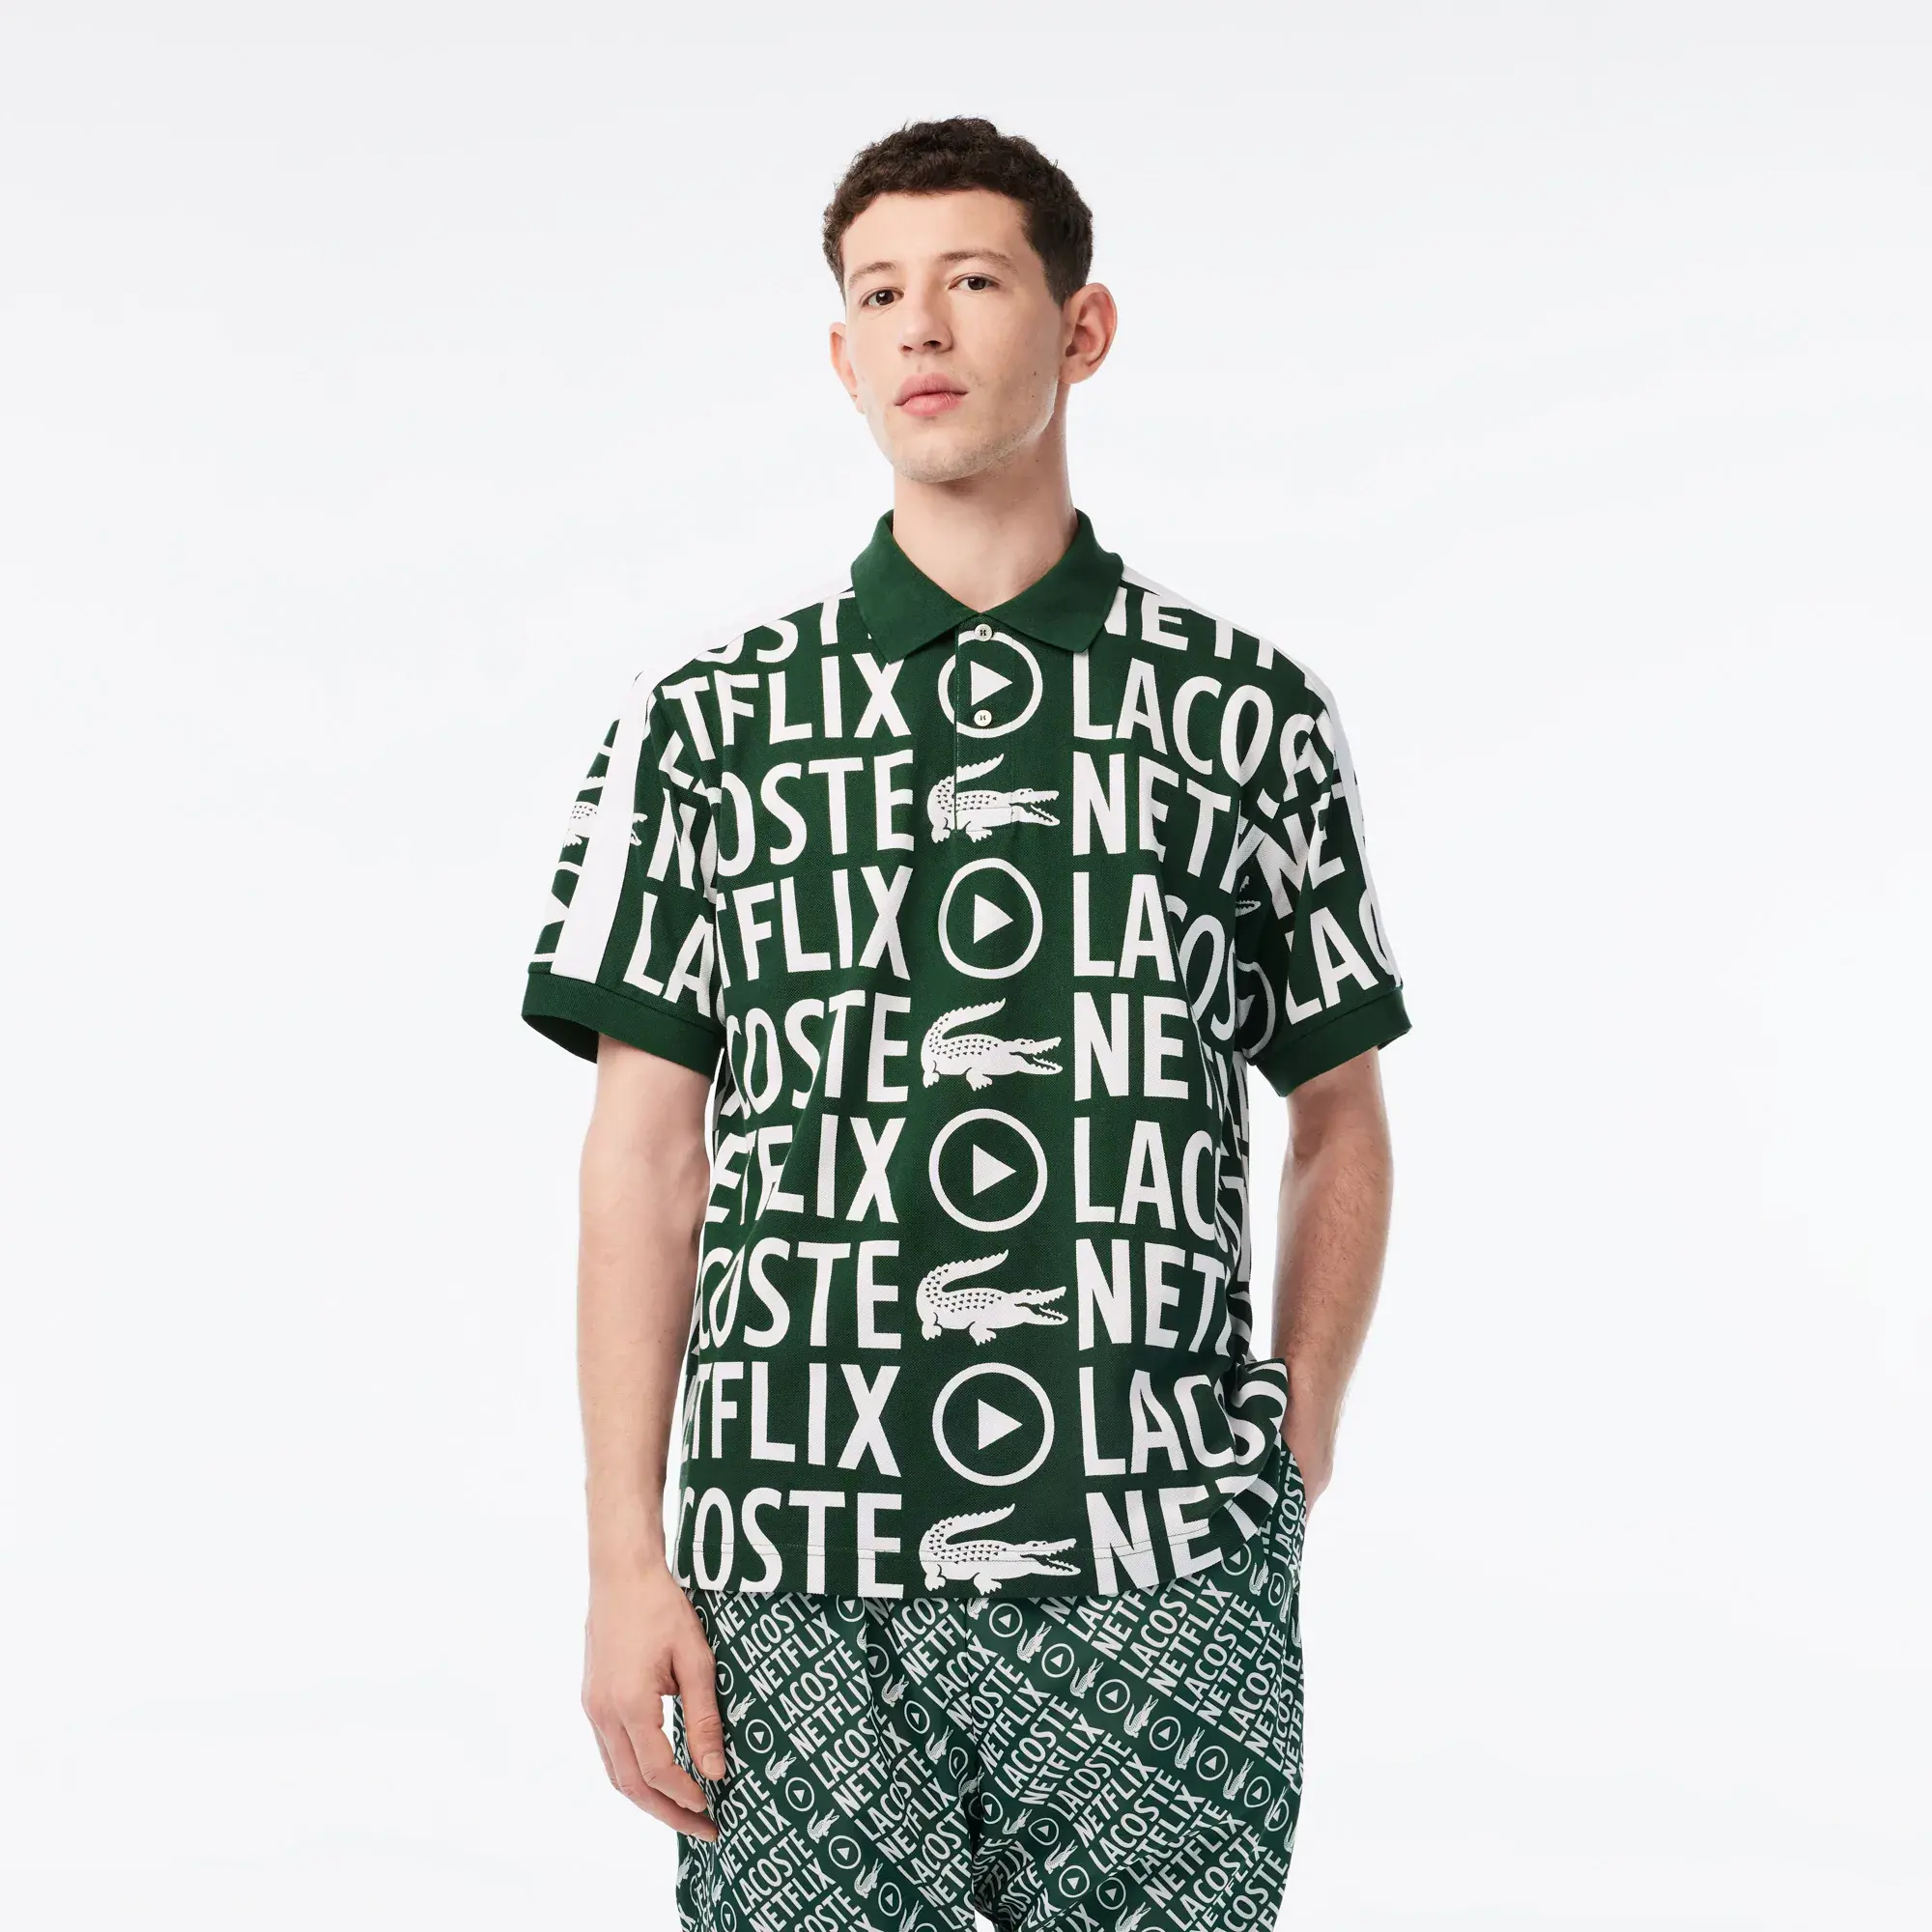 Lacoste - Men's Lacoste x Netflix Loose Fit Organic Cotton Print Polo Shirt